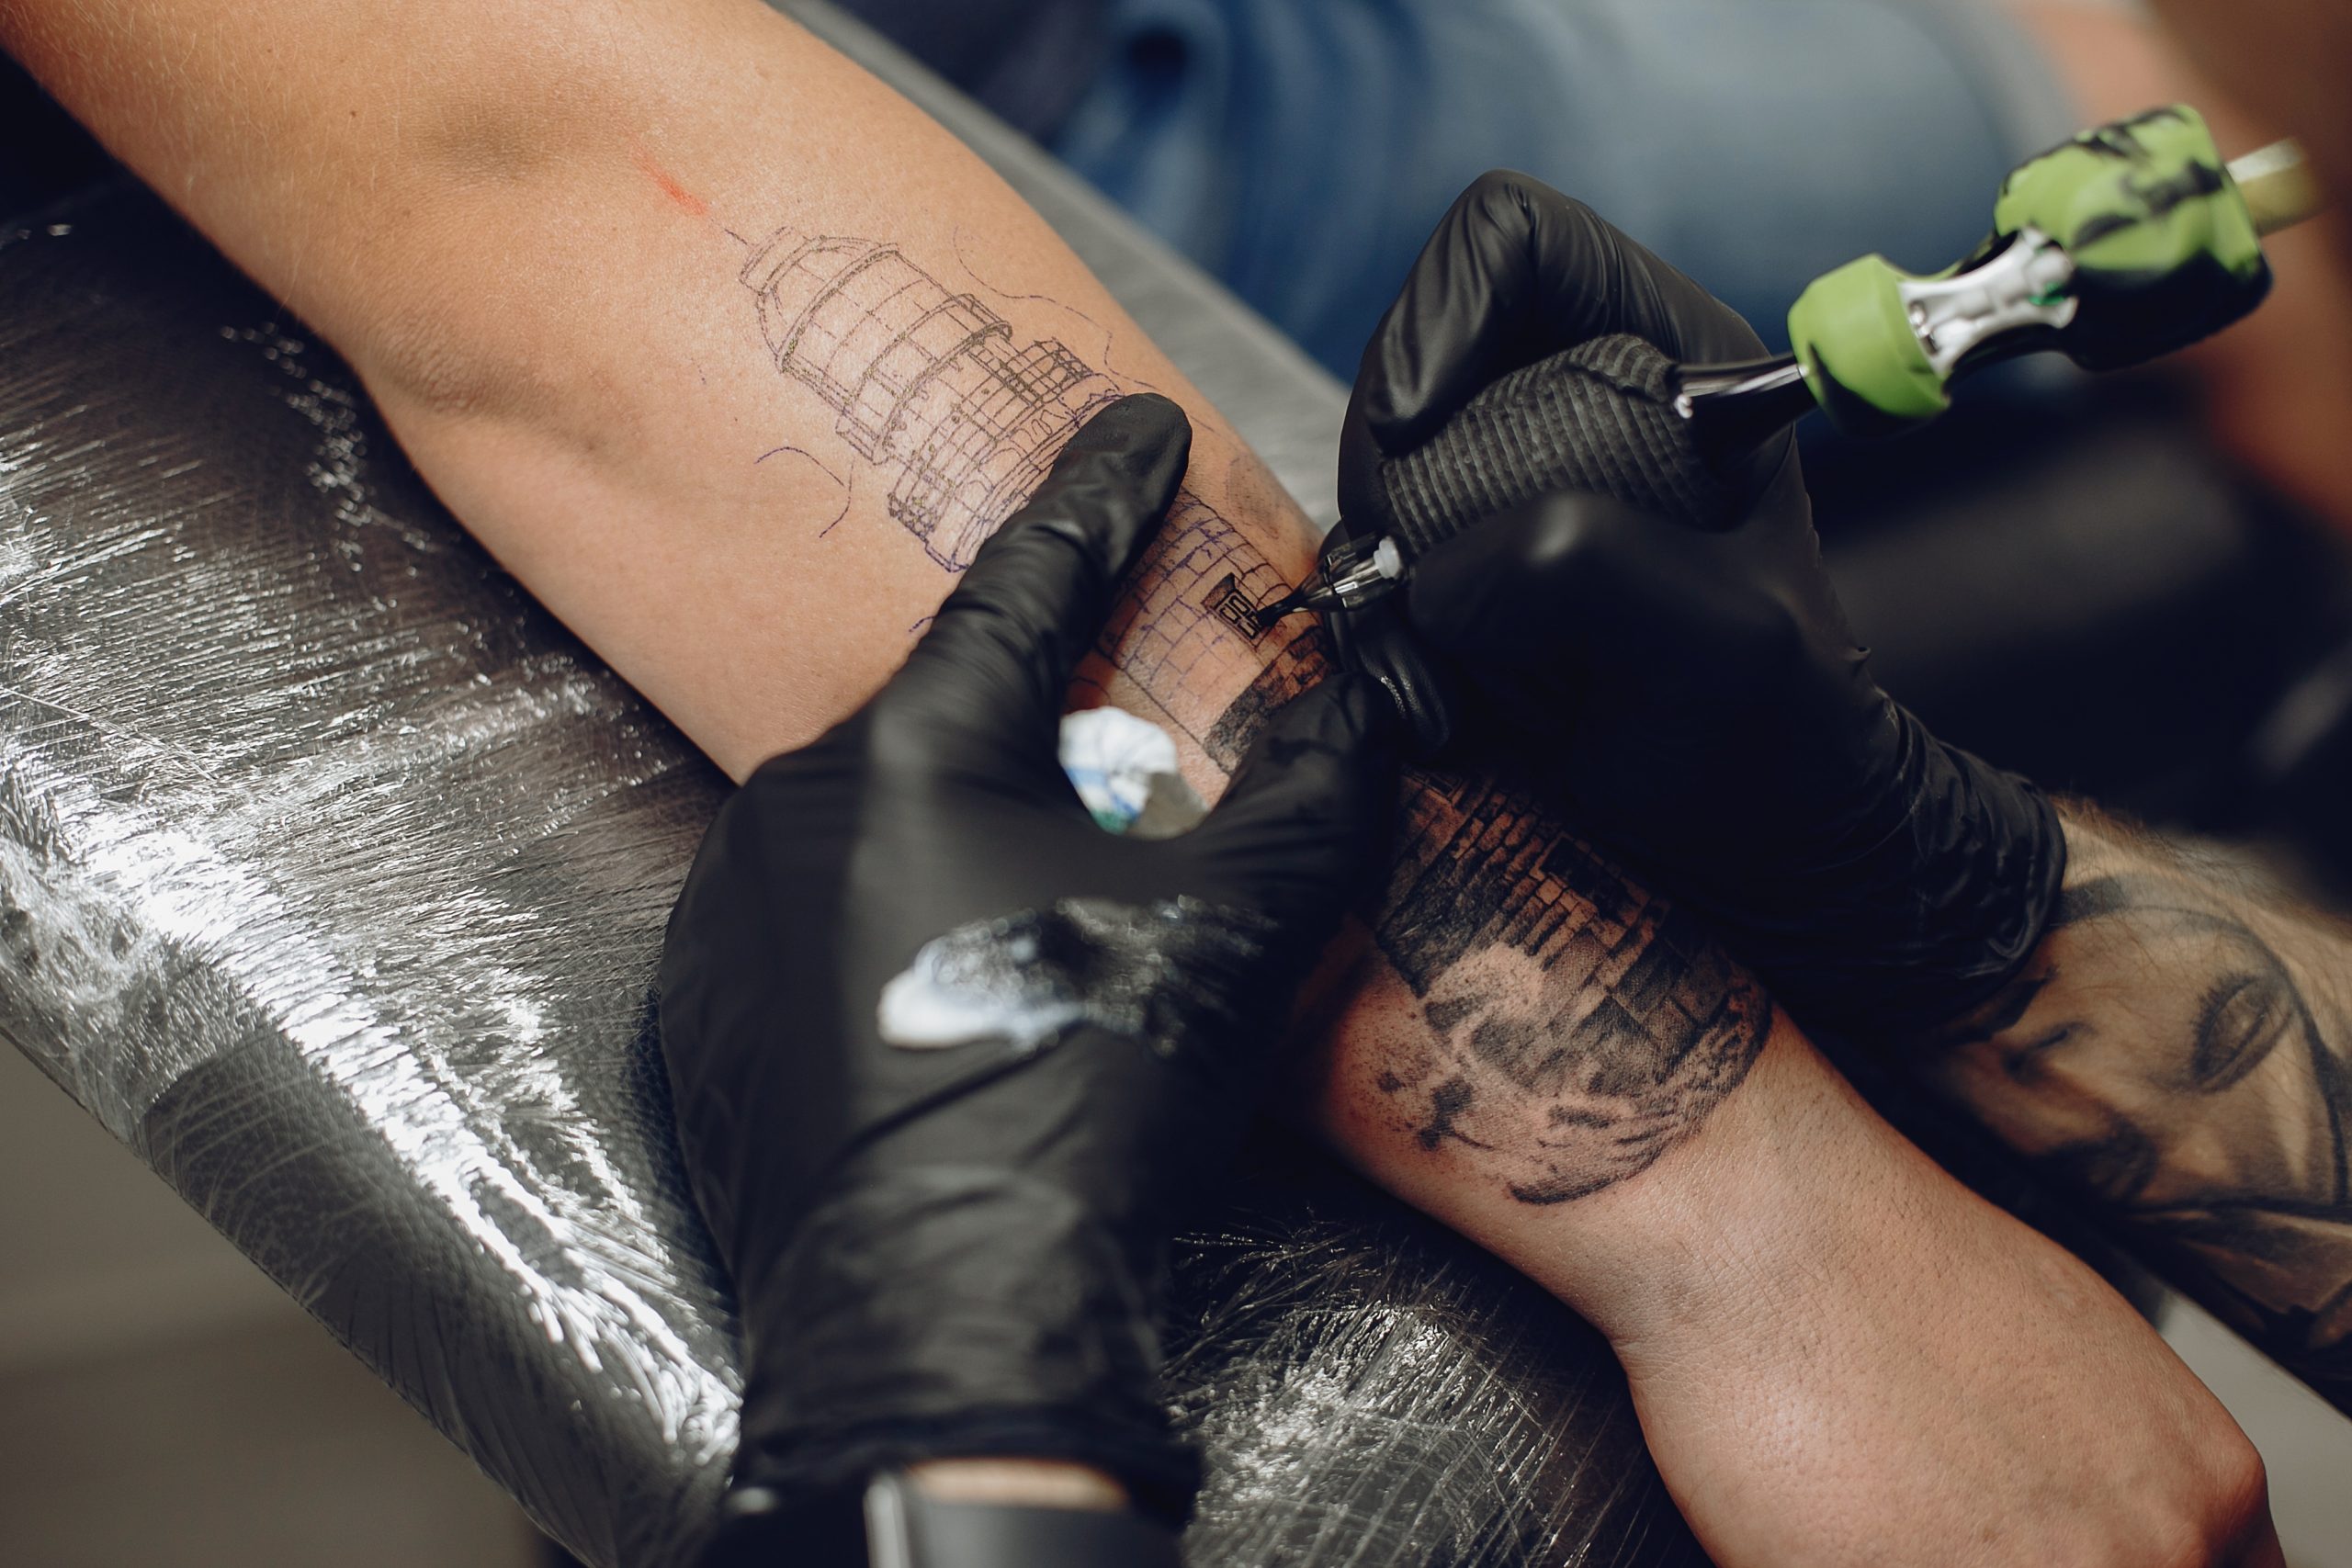 man-doing-a-tattoo-in-a-tattoo-salon-2021-08-26-18-31-13-utc-scaled.jpg